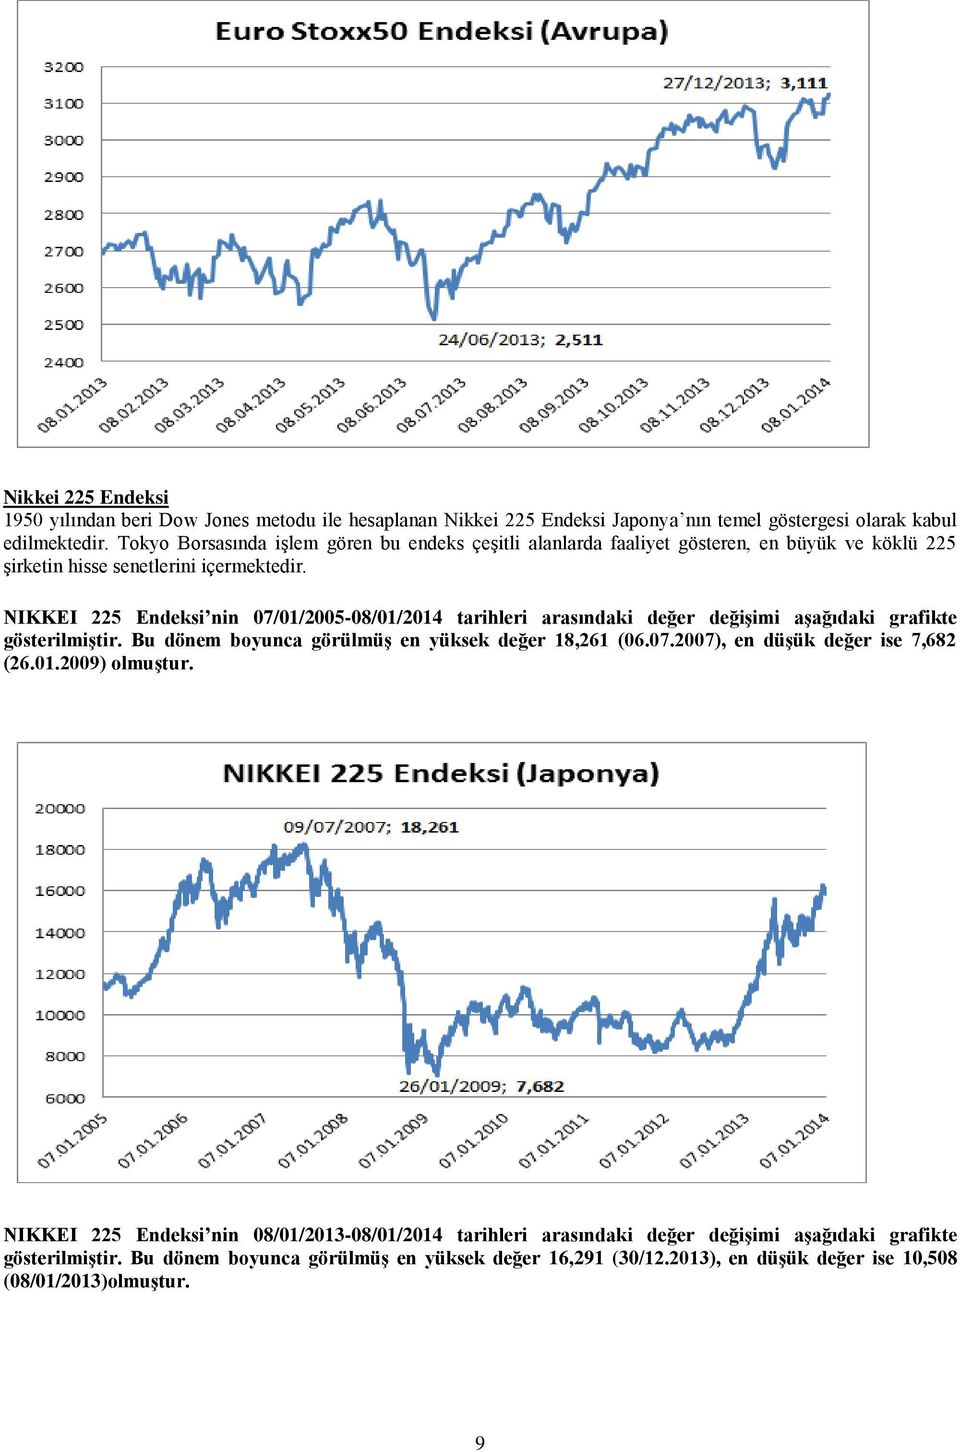 NIKKEI 225 Endeksi nin 07/01/2005-08/01/2014 tarihleri arasındaki değer değişimi aşağıdaki grafikte gösterilmiştir. Bu dönem boyunca görülmüş en yüksek değer 18,261 (06.07.2007), en düşük değer ise 7,682 (26.